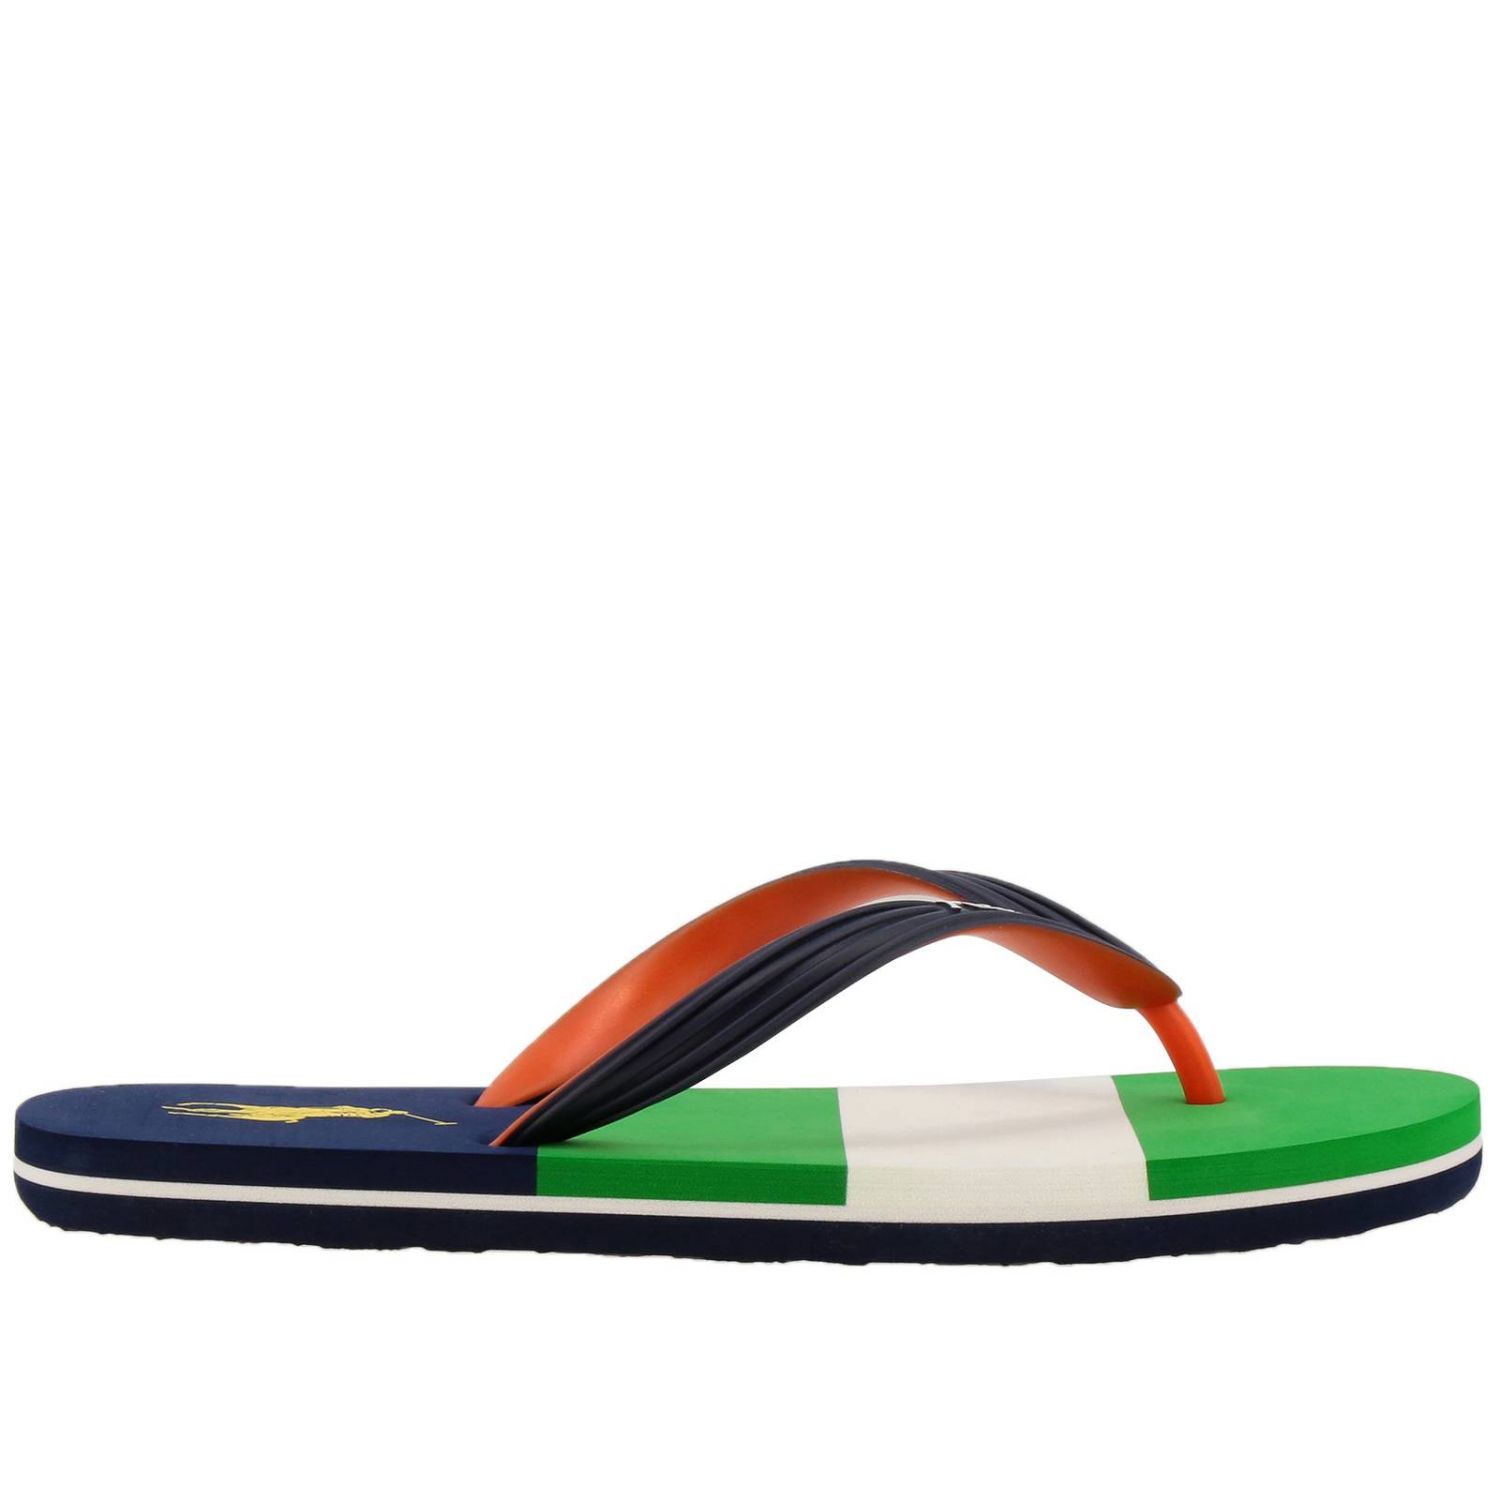 Polo Ralph Lauren Outlet: Shoes men - Multicolor | Sandals Polo Ralph ...